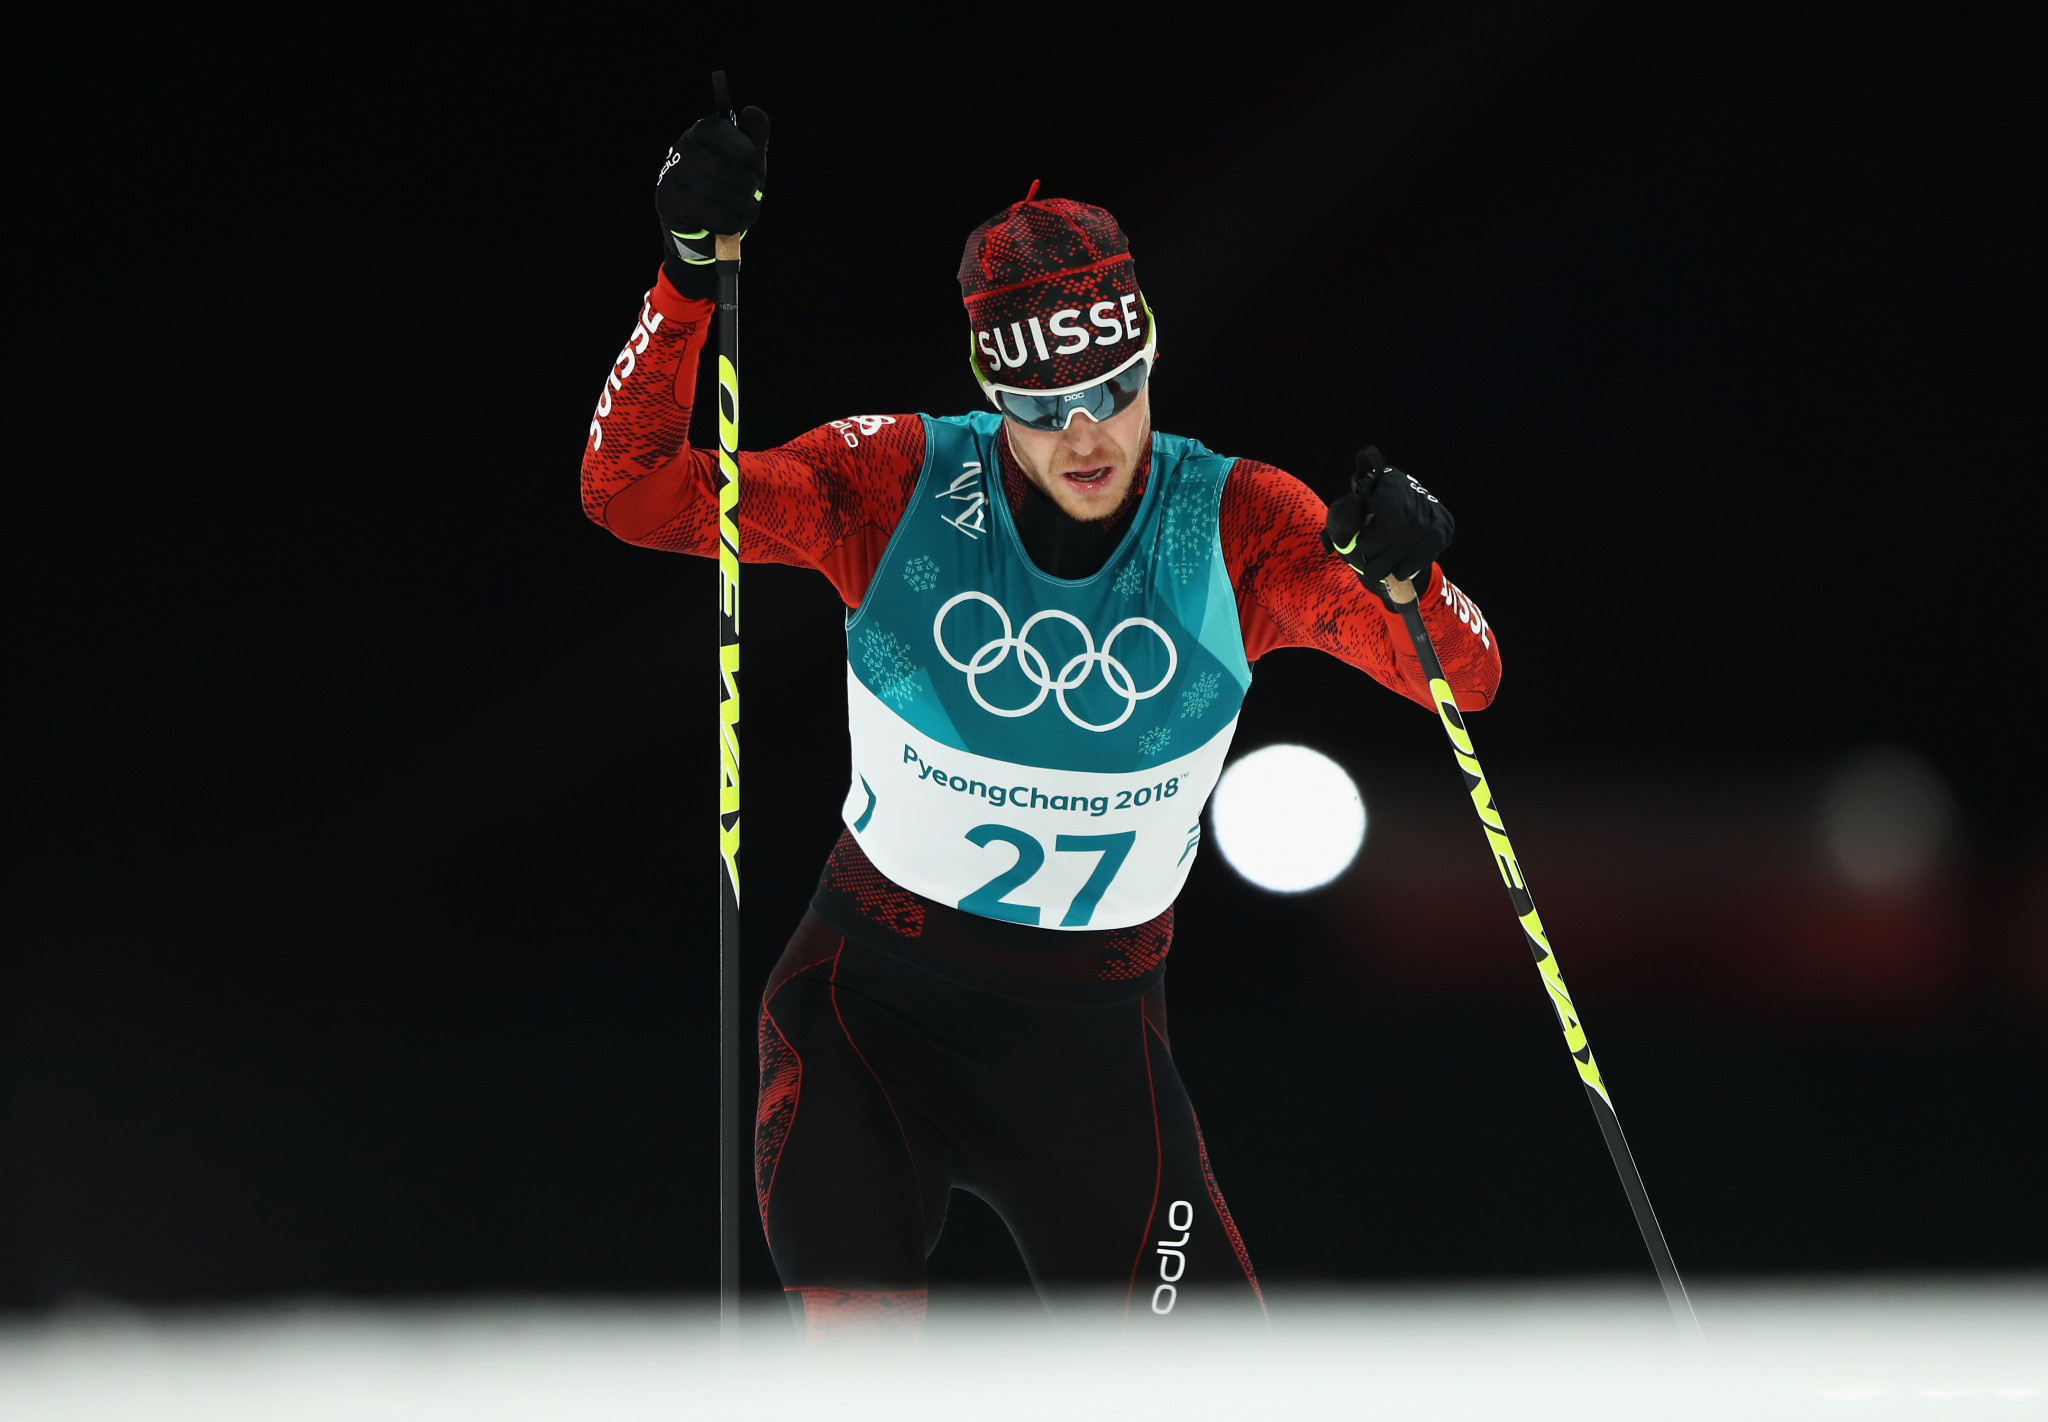 Swiss Nordic combined skier Hug retires